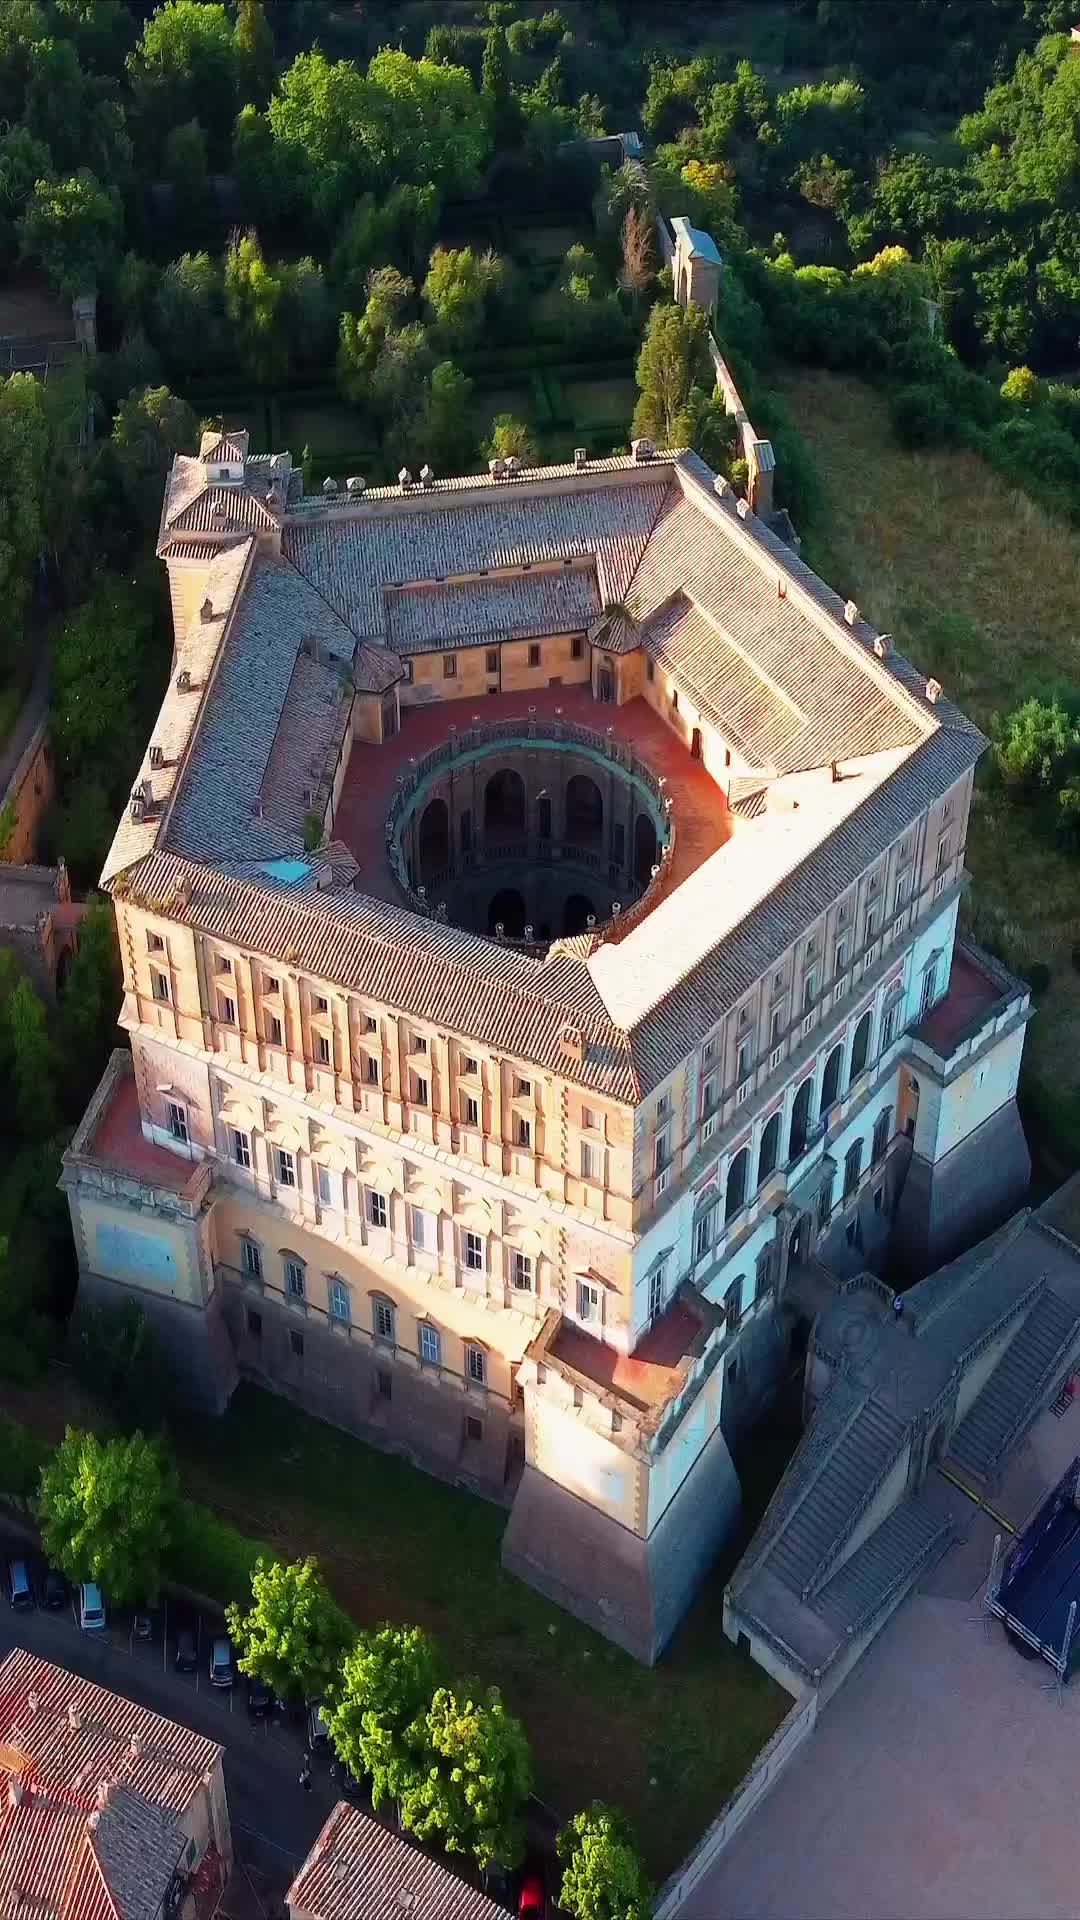 Discover Palazzo Farnese in Caprarola, Italy